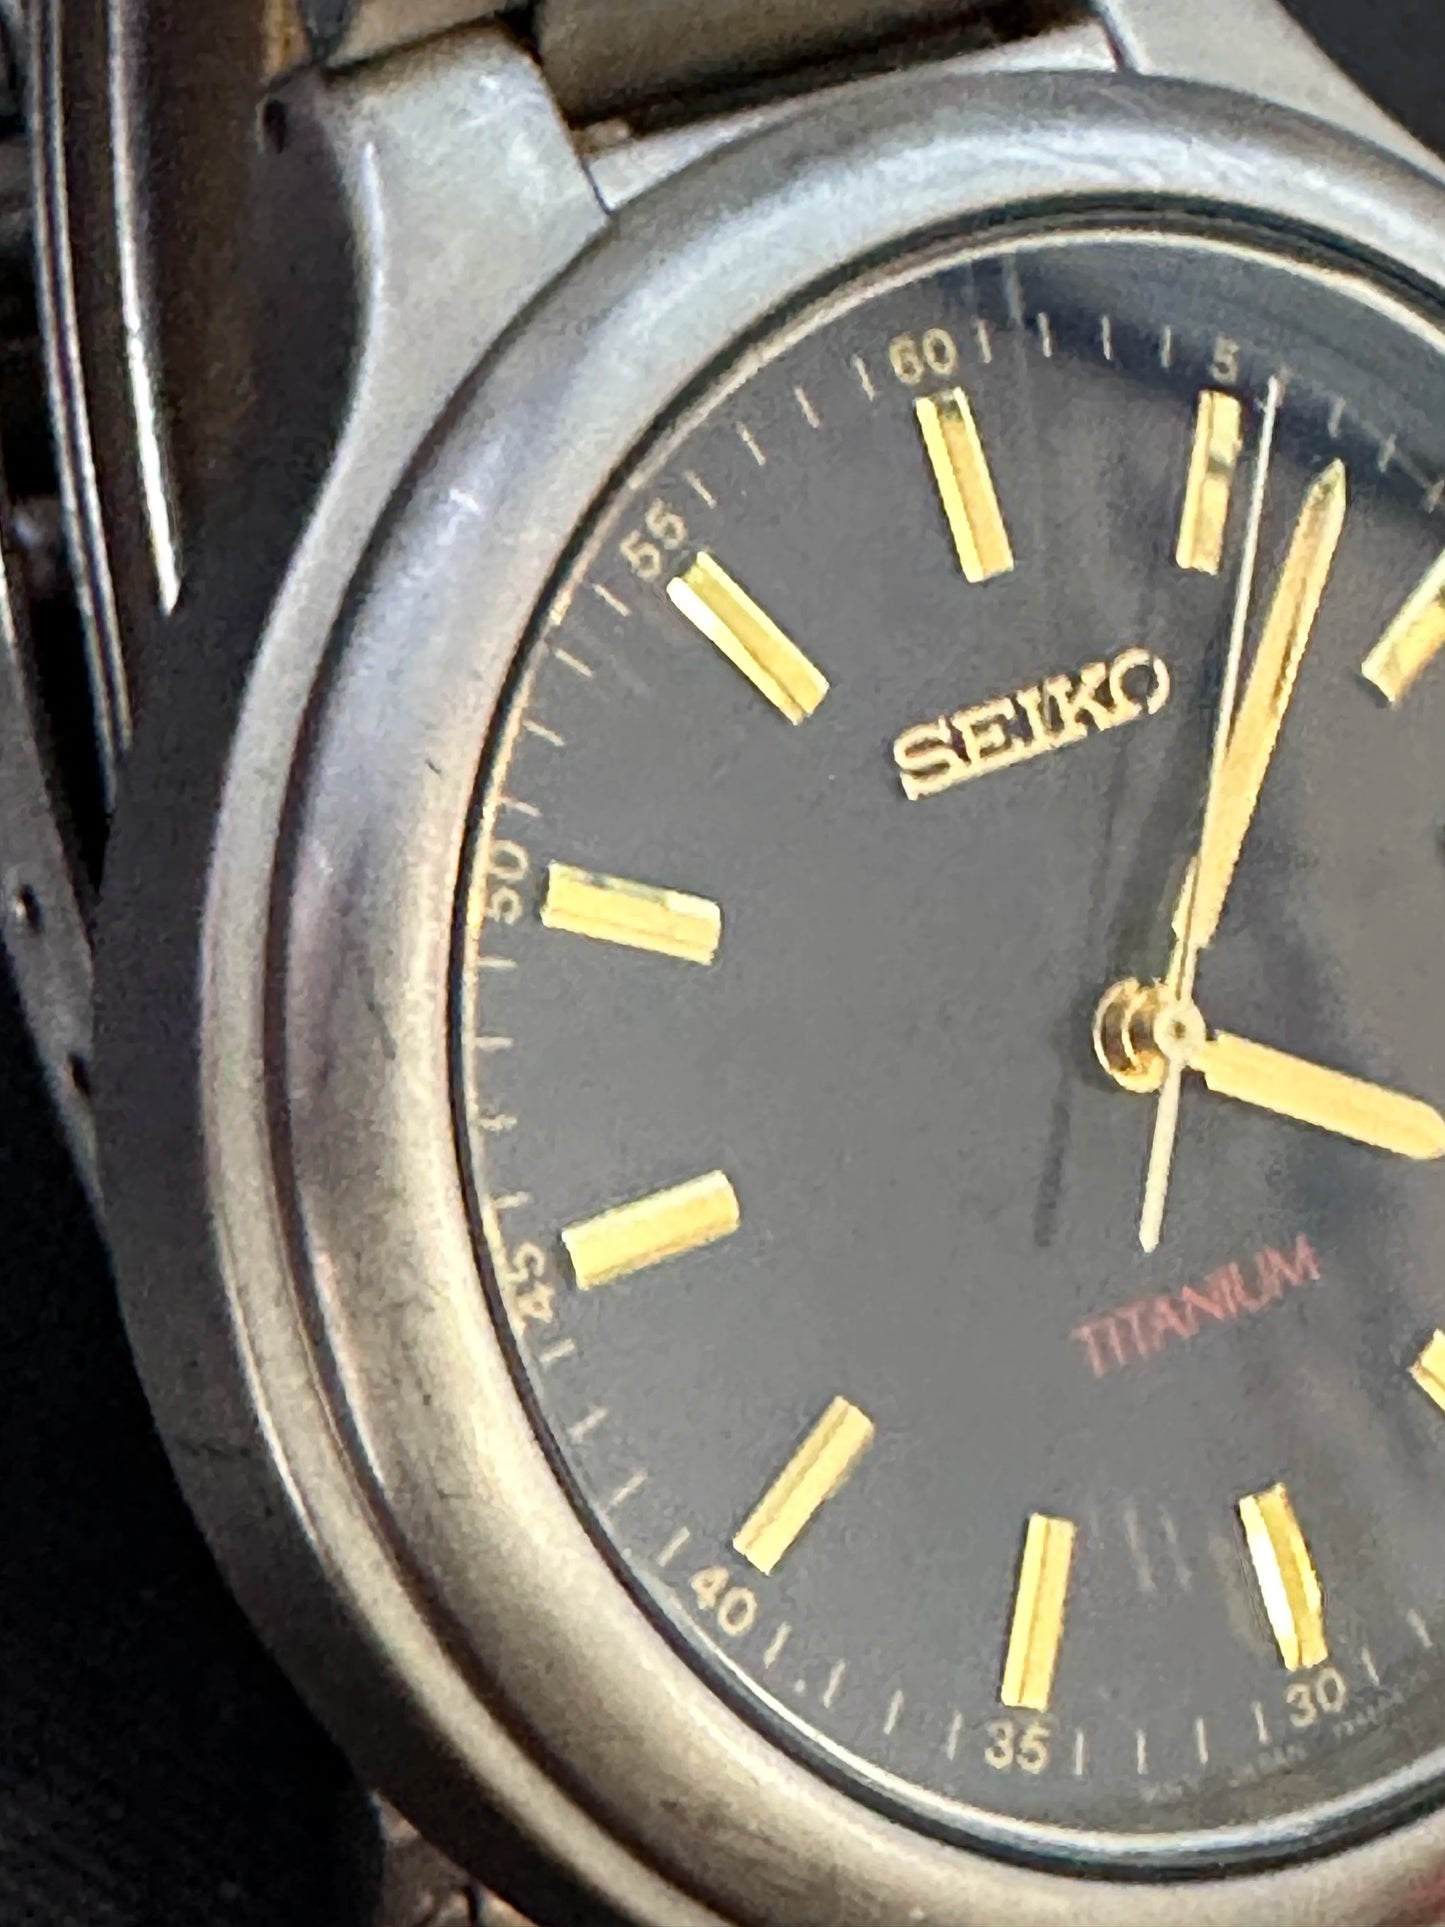 Seiko Titanium Quartz Analog Men's Watch - 7N42-8109-A0